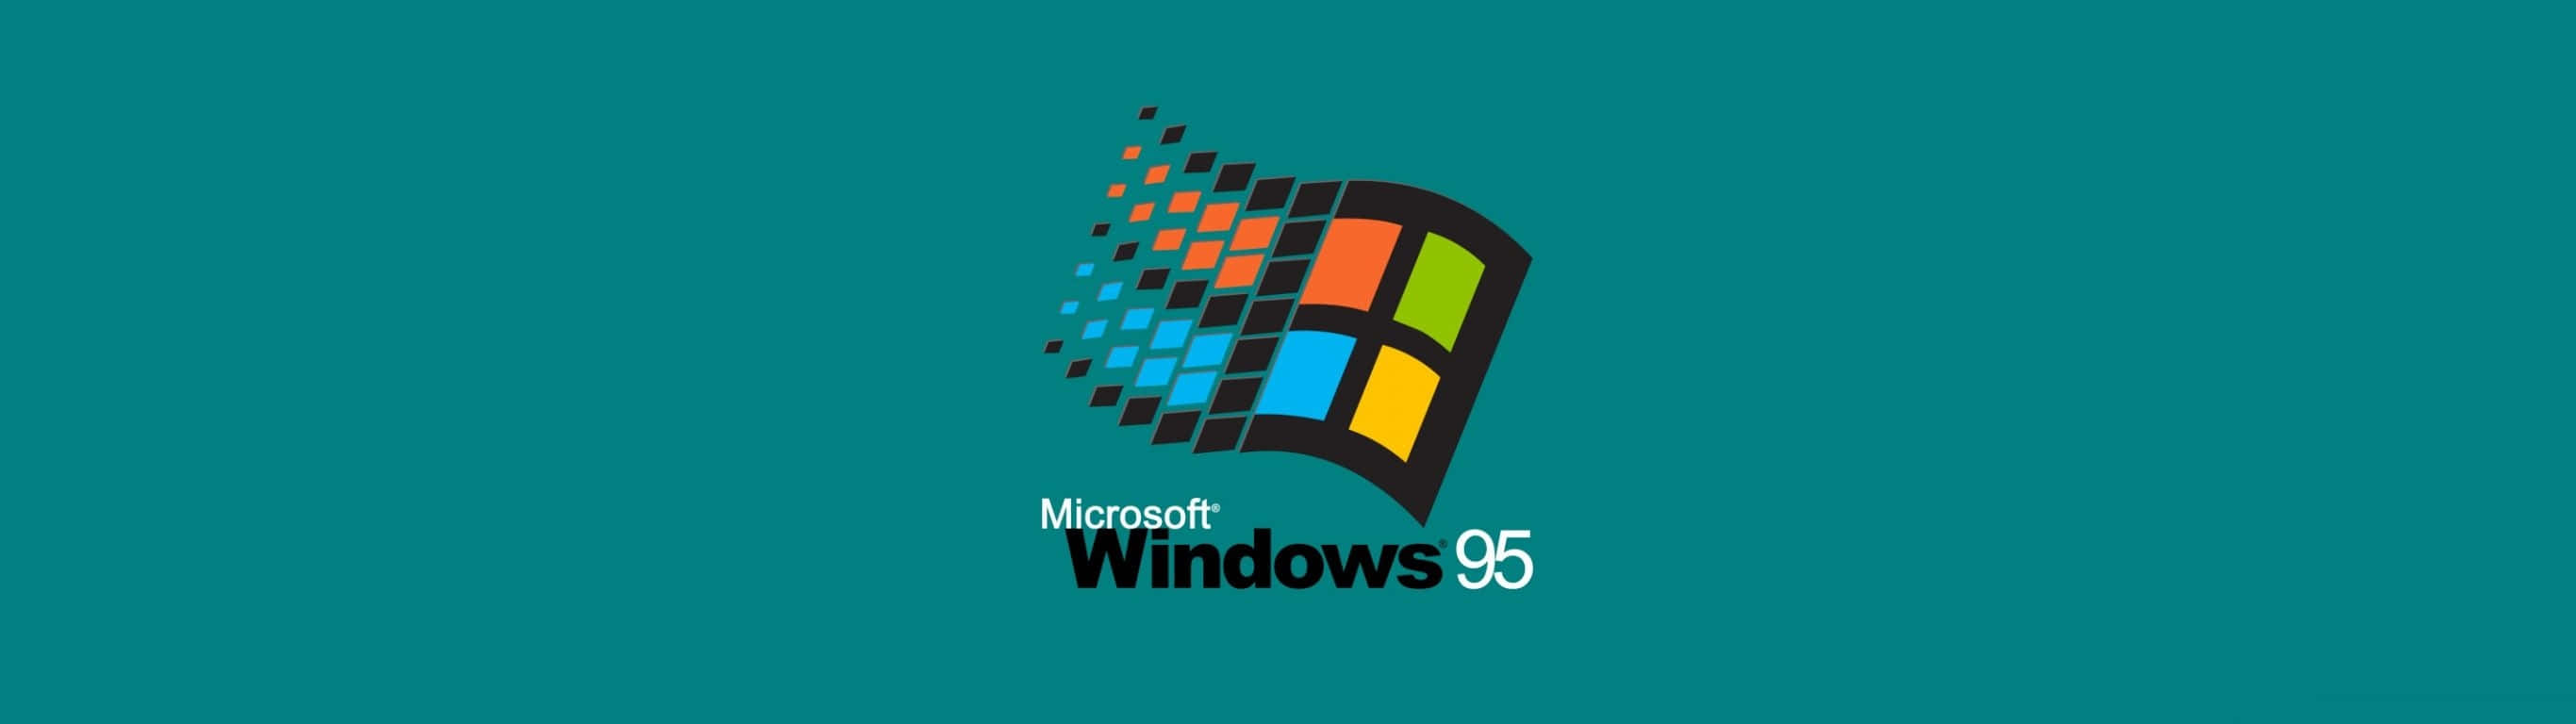 2732 X 768 Windows 95 Aqua Wallpaper